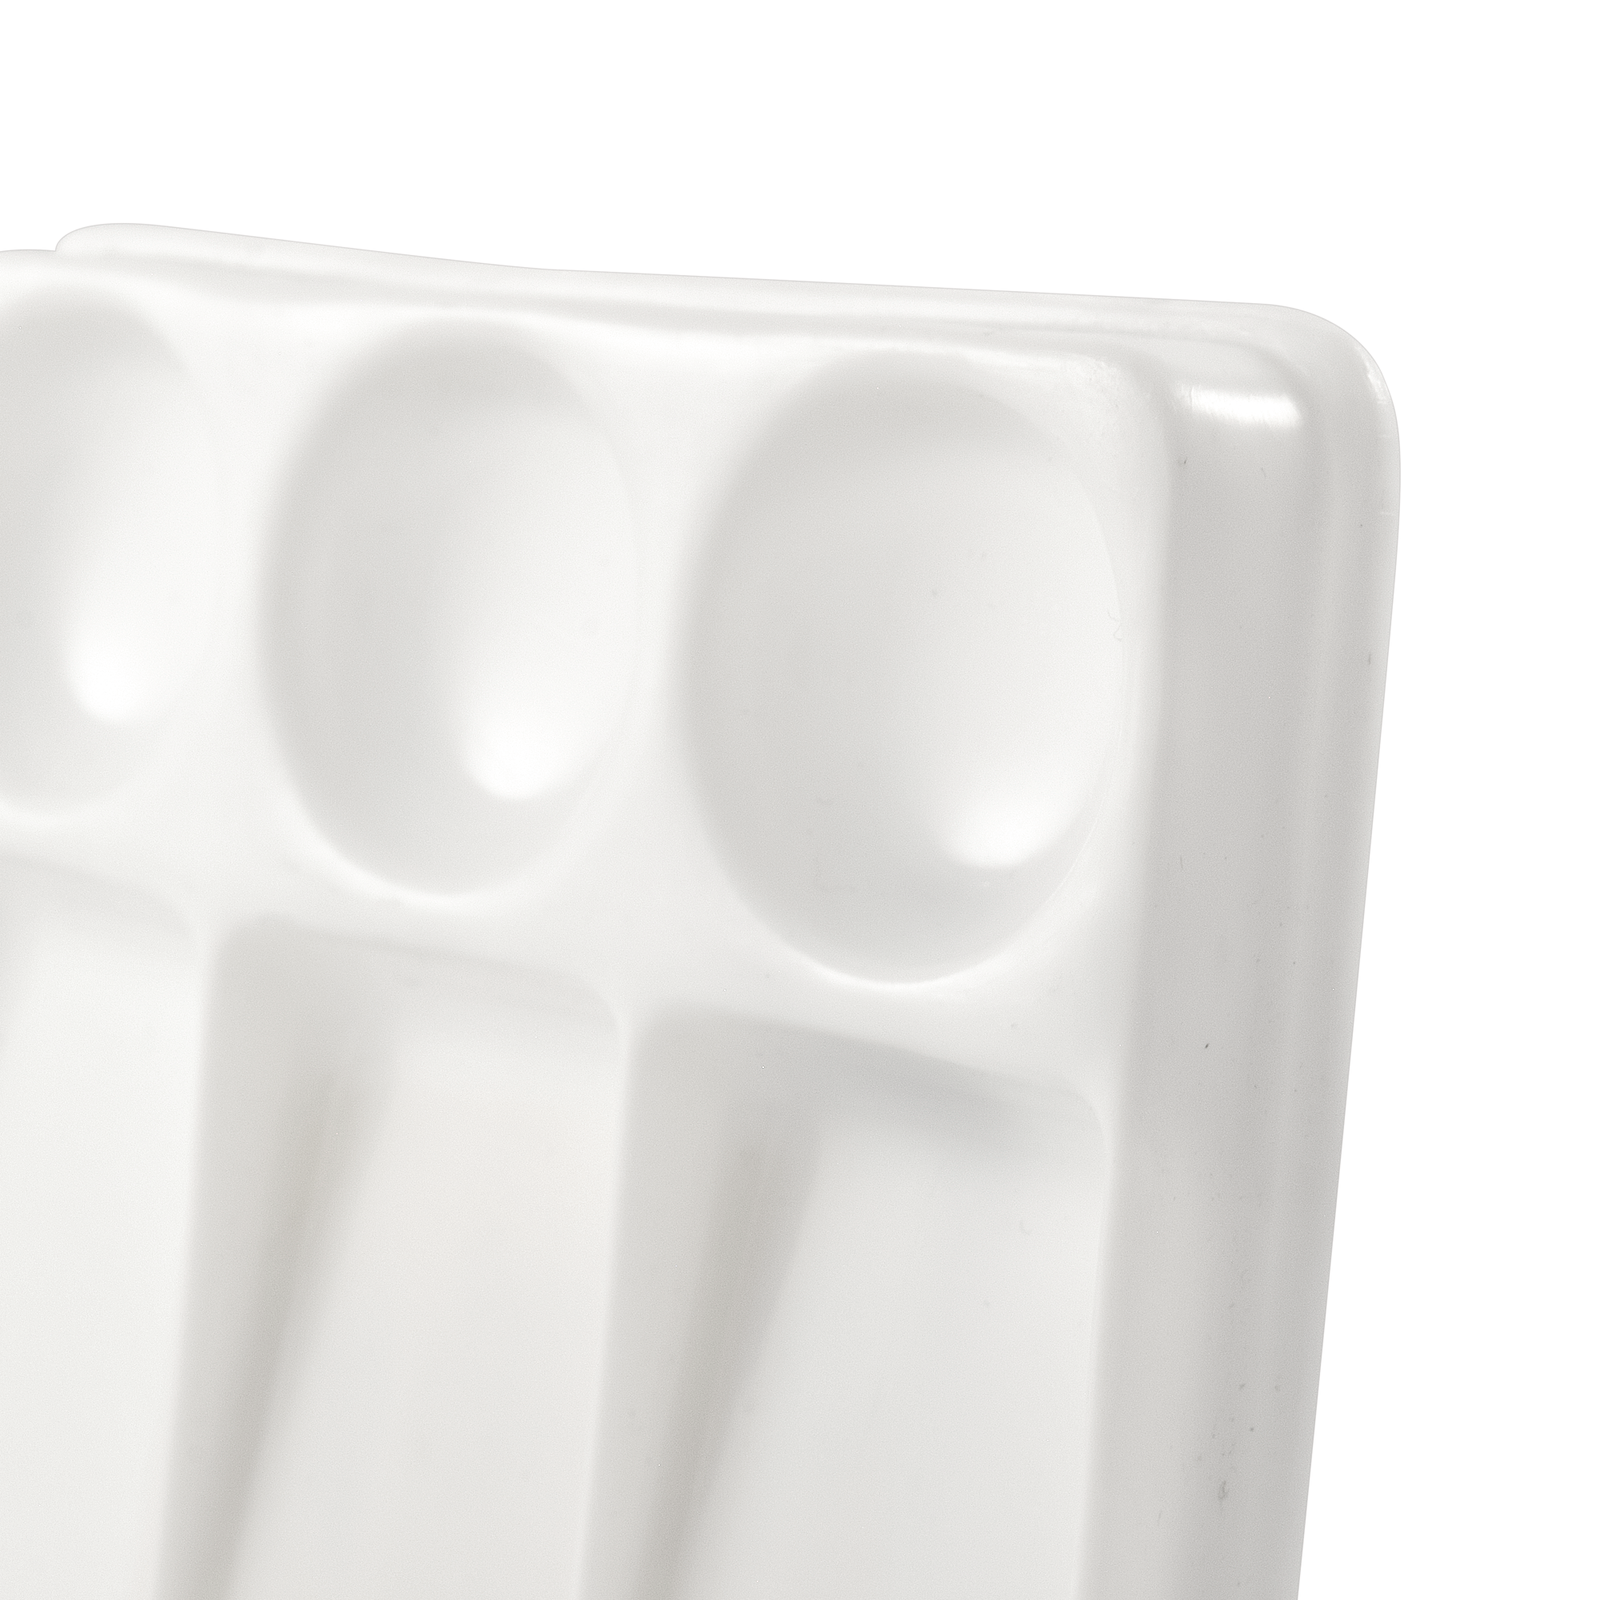 ATL - Godete de plástico rectangular con 6 cavidades